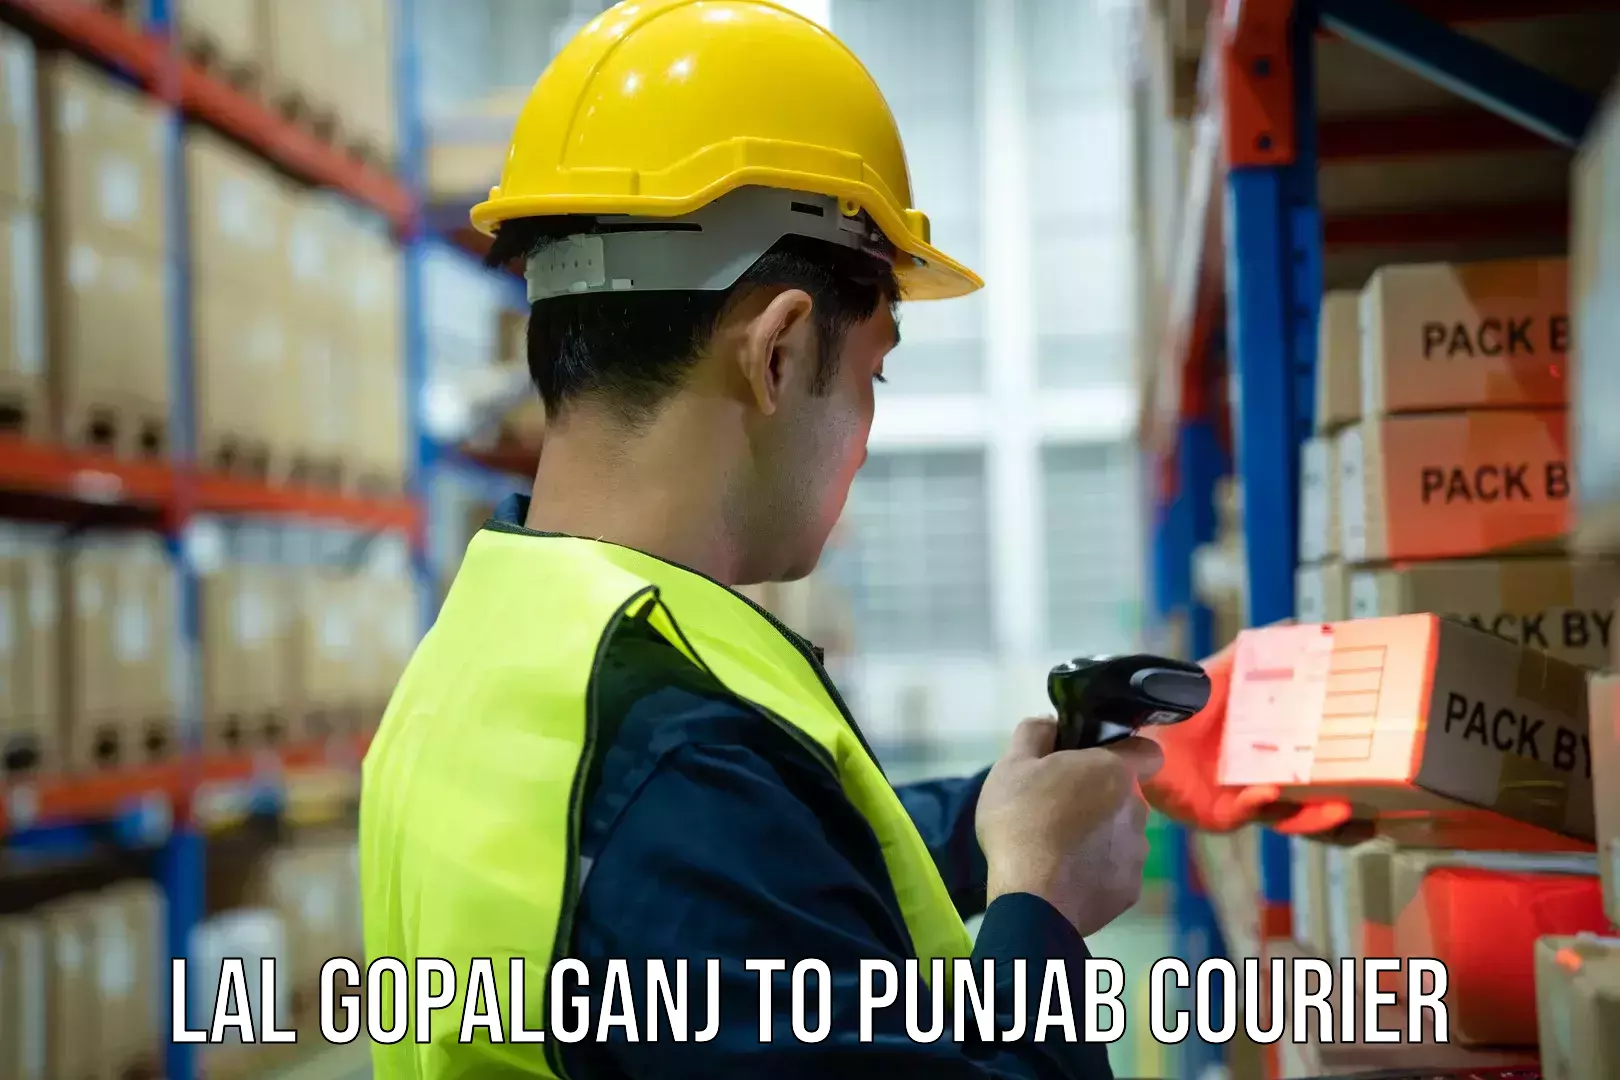 Nationwide shipping coverage Lal Gopalganj to Amritsar